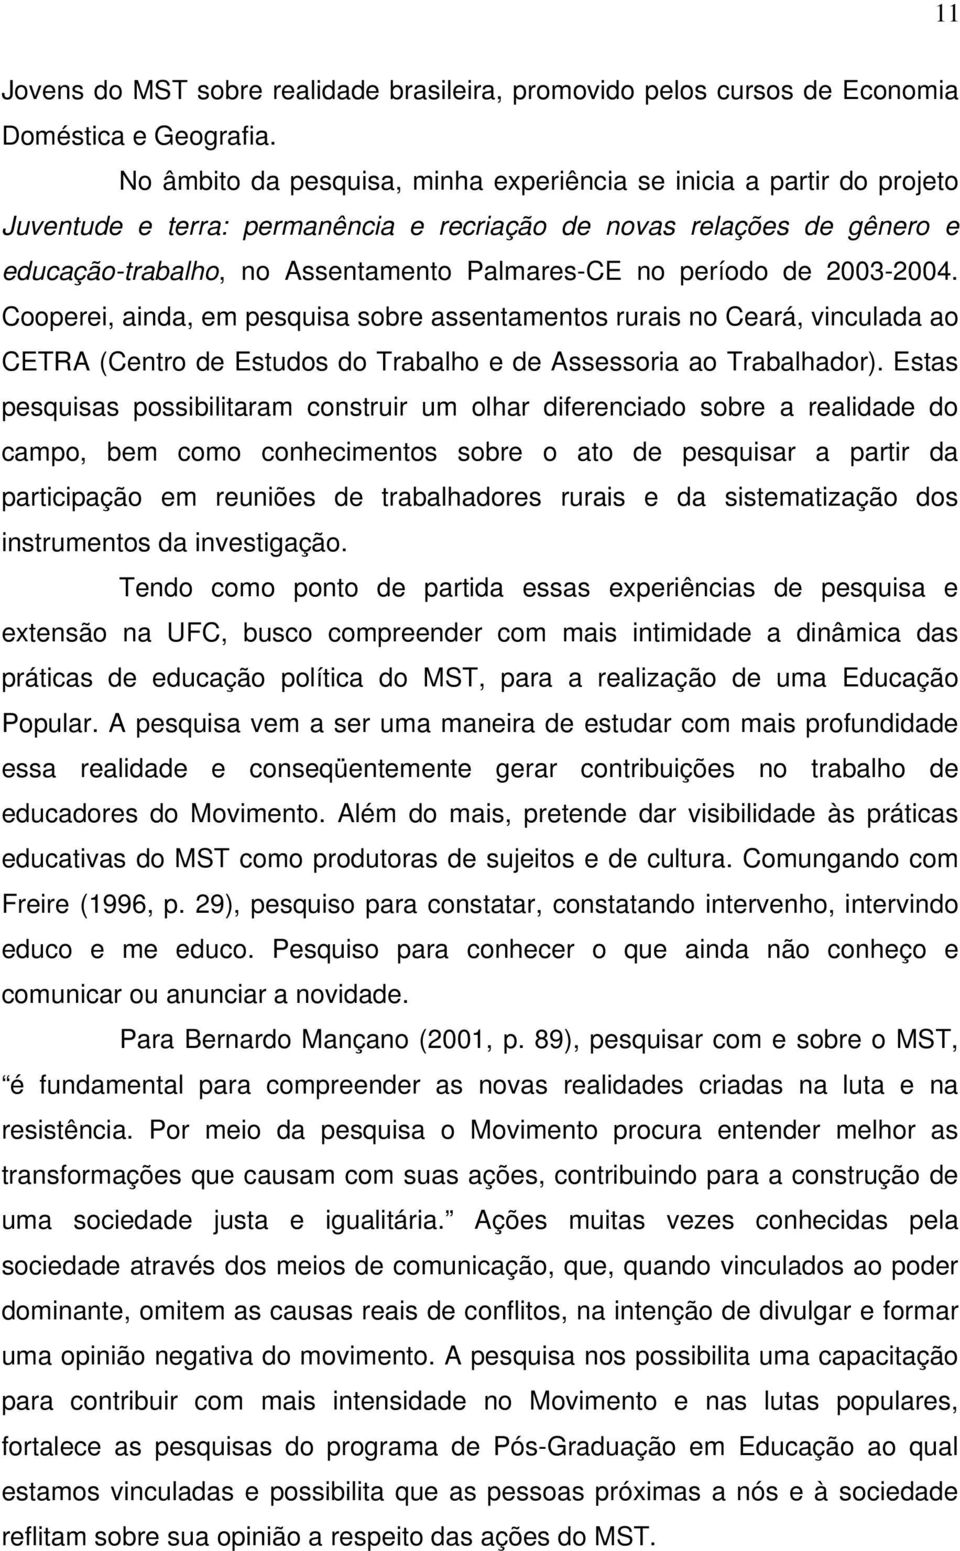 período de 2003-2004. Cooperei, ainda, em pesquisa sobre assentamentos rurais no Ceará, vinculada ao CETRA (Centro de Estudos do Trabalho e de Assessoria ao Trabalhador).